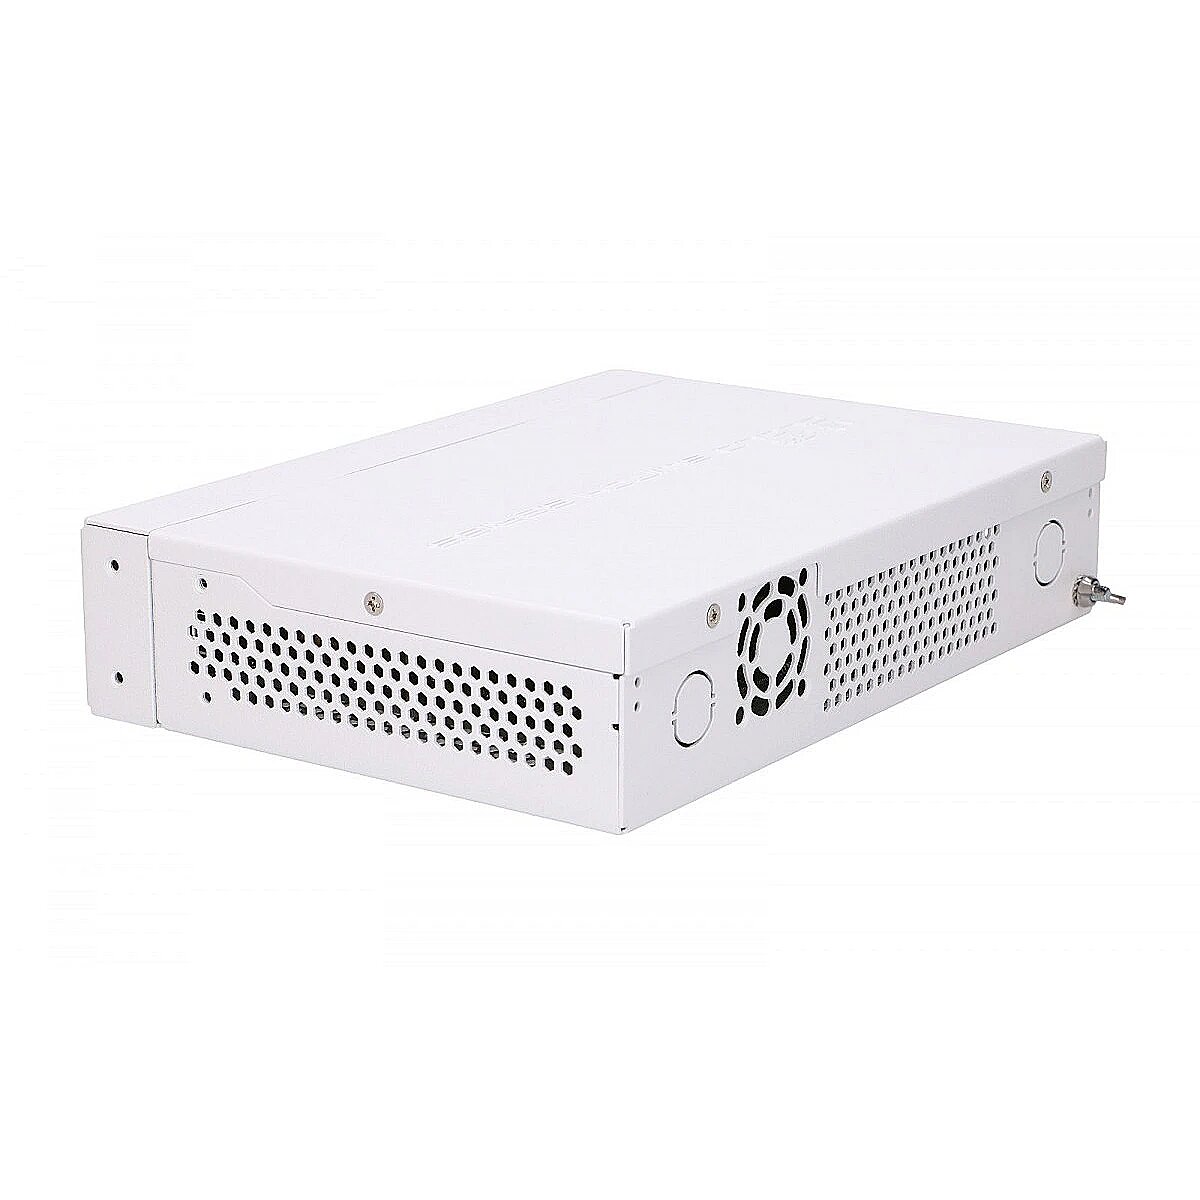 Crs112 8p 4s in. Коммутатор Mikrotik crs112-8g-4s-in. Mikrotik cloud Router Switch crs112-8g-4s-in. Crs112-8g-4s Mikrotik. Cloud Router Switch crs112.